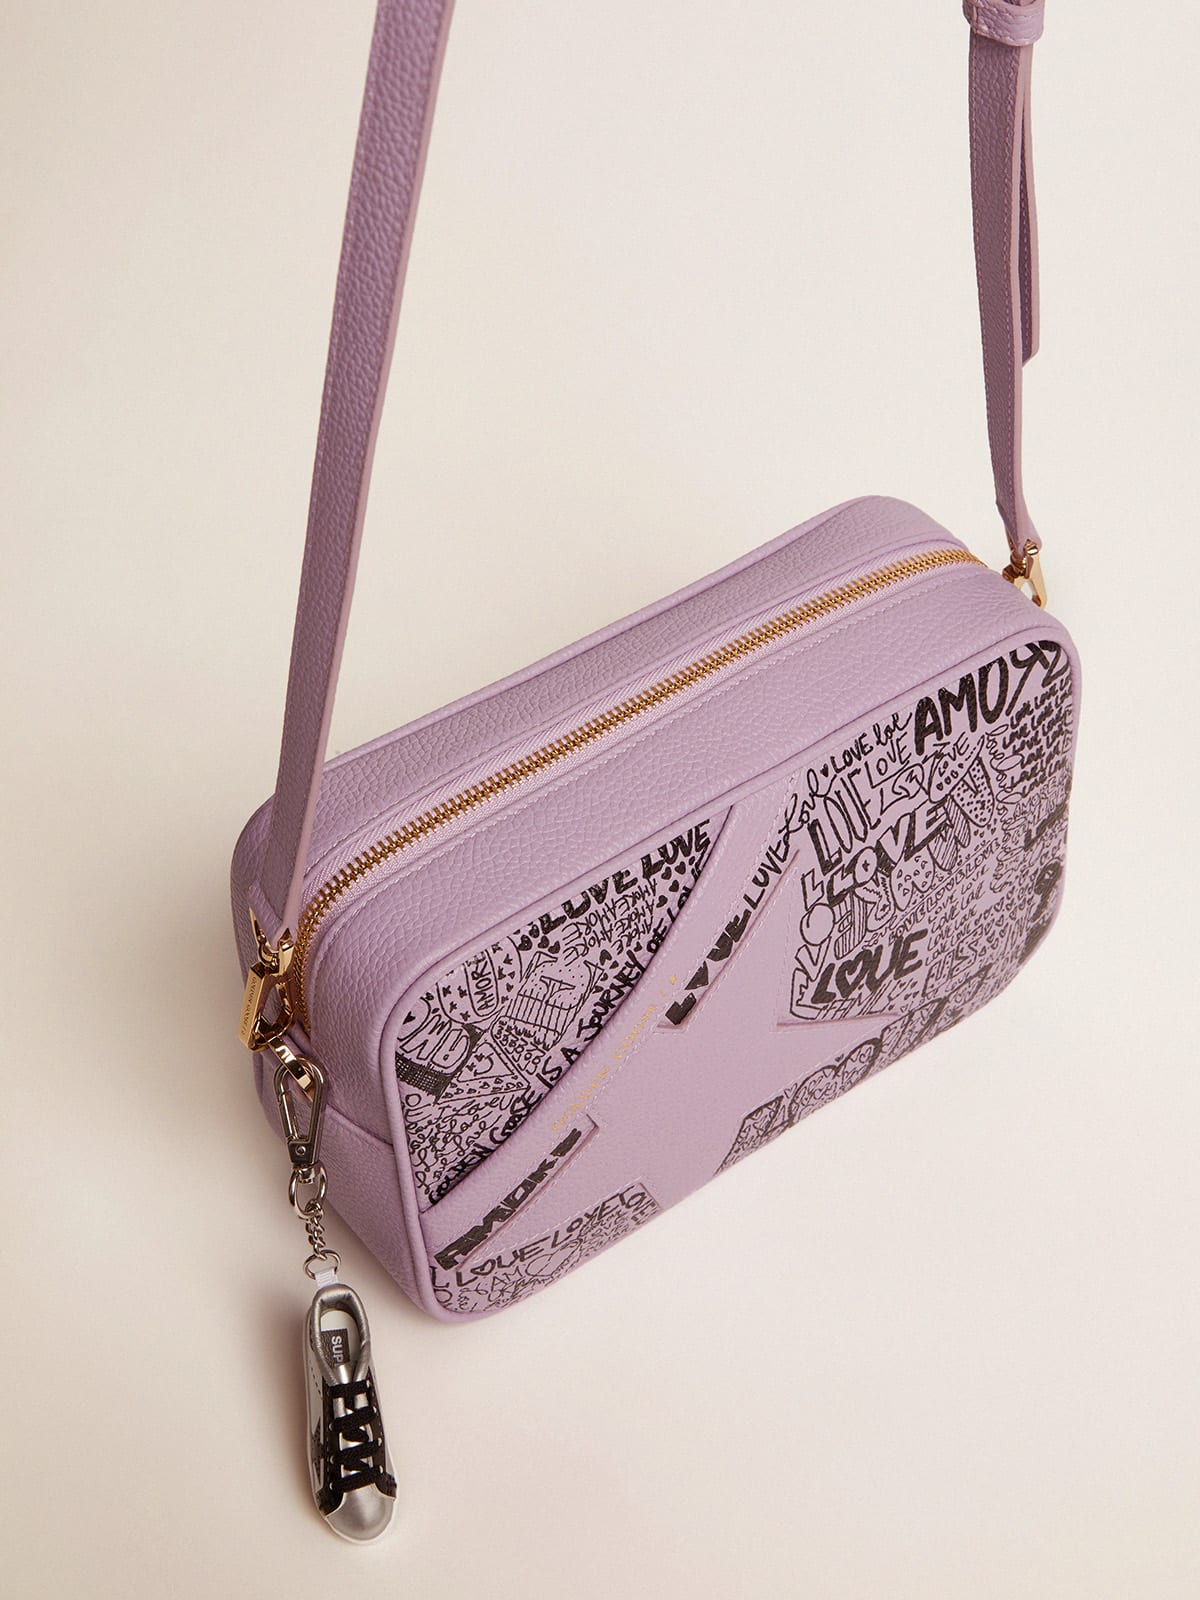 Golden Goose - Bolso Star Bag de piel martillada color lila con estrella de piel tono sobre tono y estampado de grafiti all-over de color negro in 